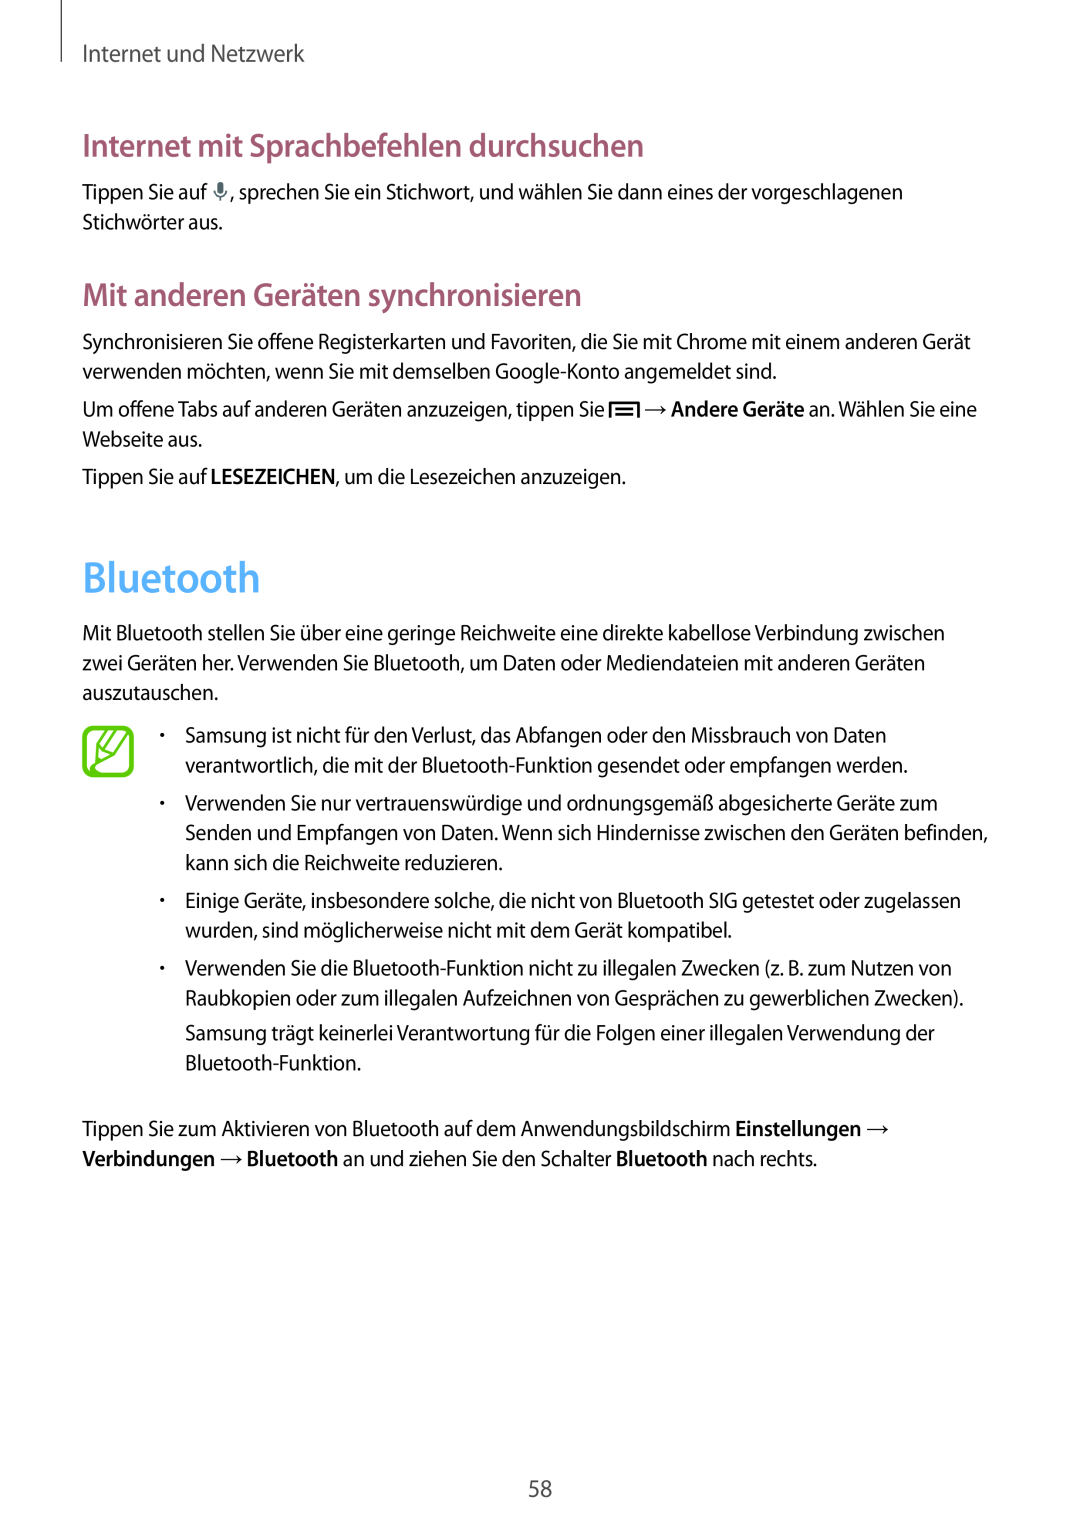 Samsung SM-P6000ZWATUR manual Bluetooth, Mit anderen Geräten synchronisieren, Internet mit Sprachbefehlen durchsuchen 